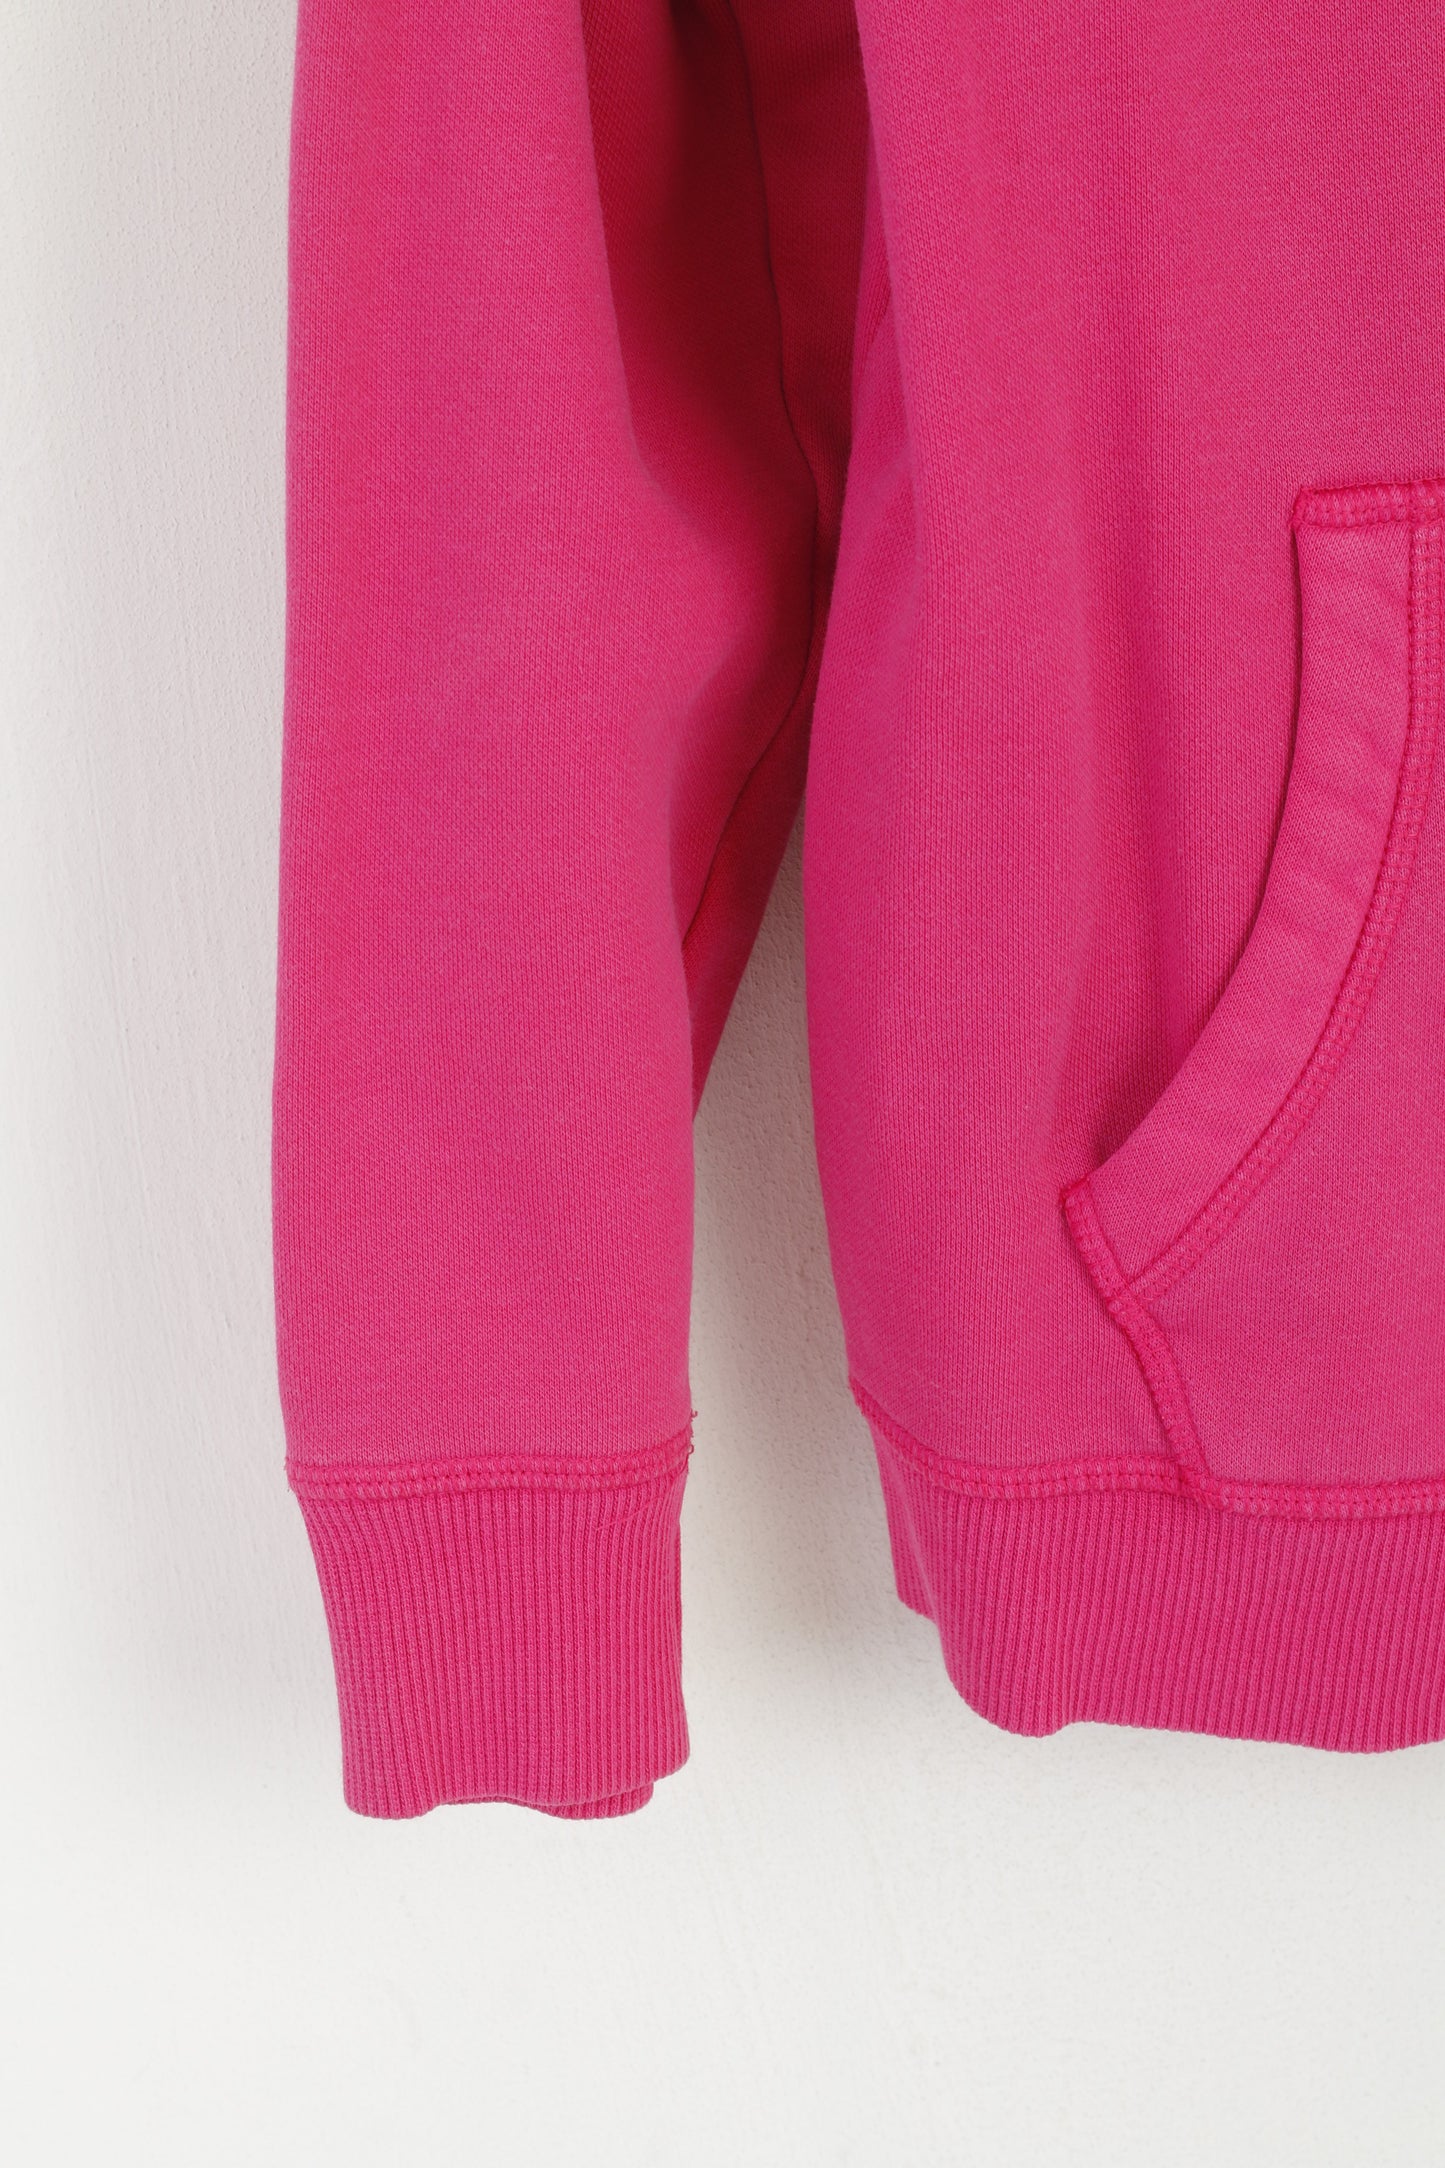 Puma Women 16 M Sweatshirt Pink Cotton Zip Up Sportswear Hooded Sport Top